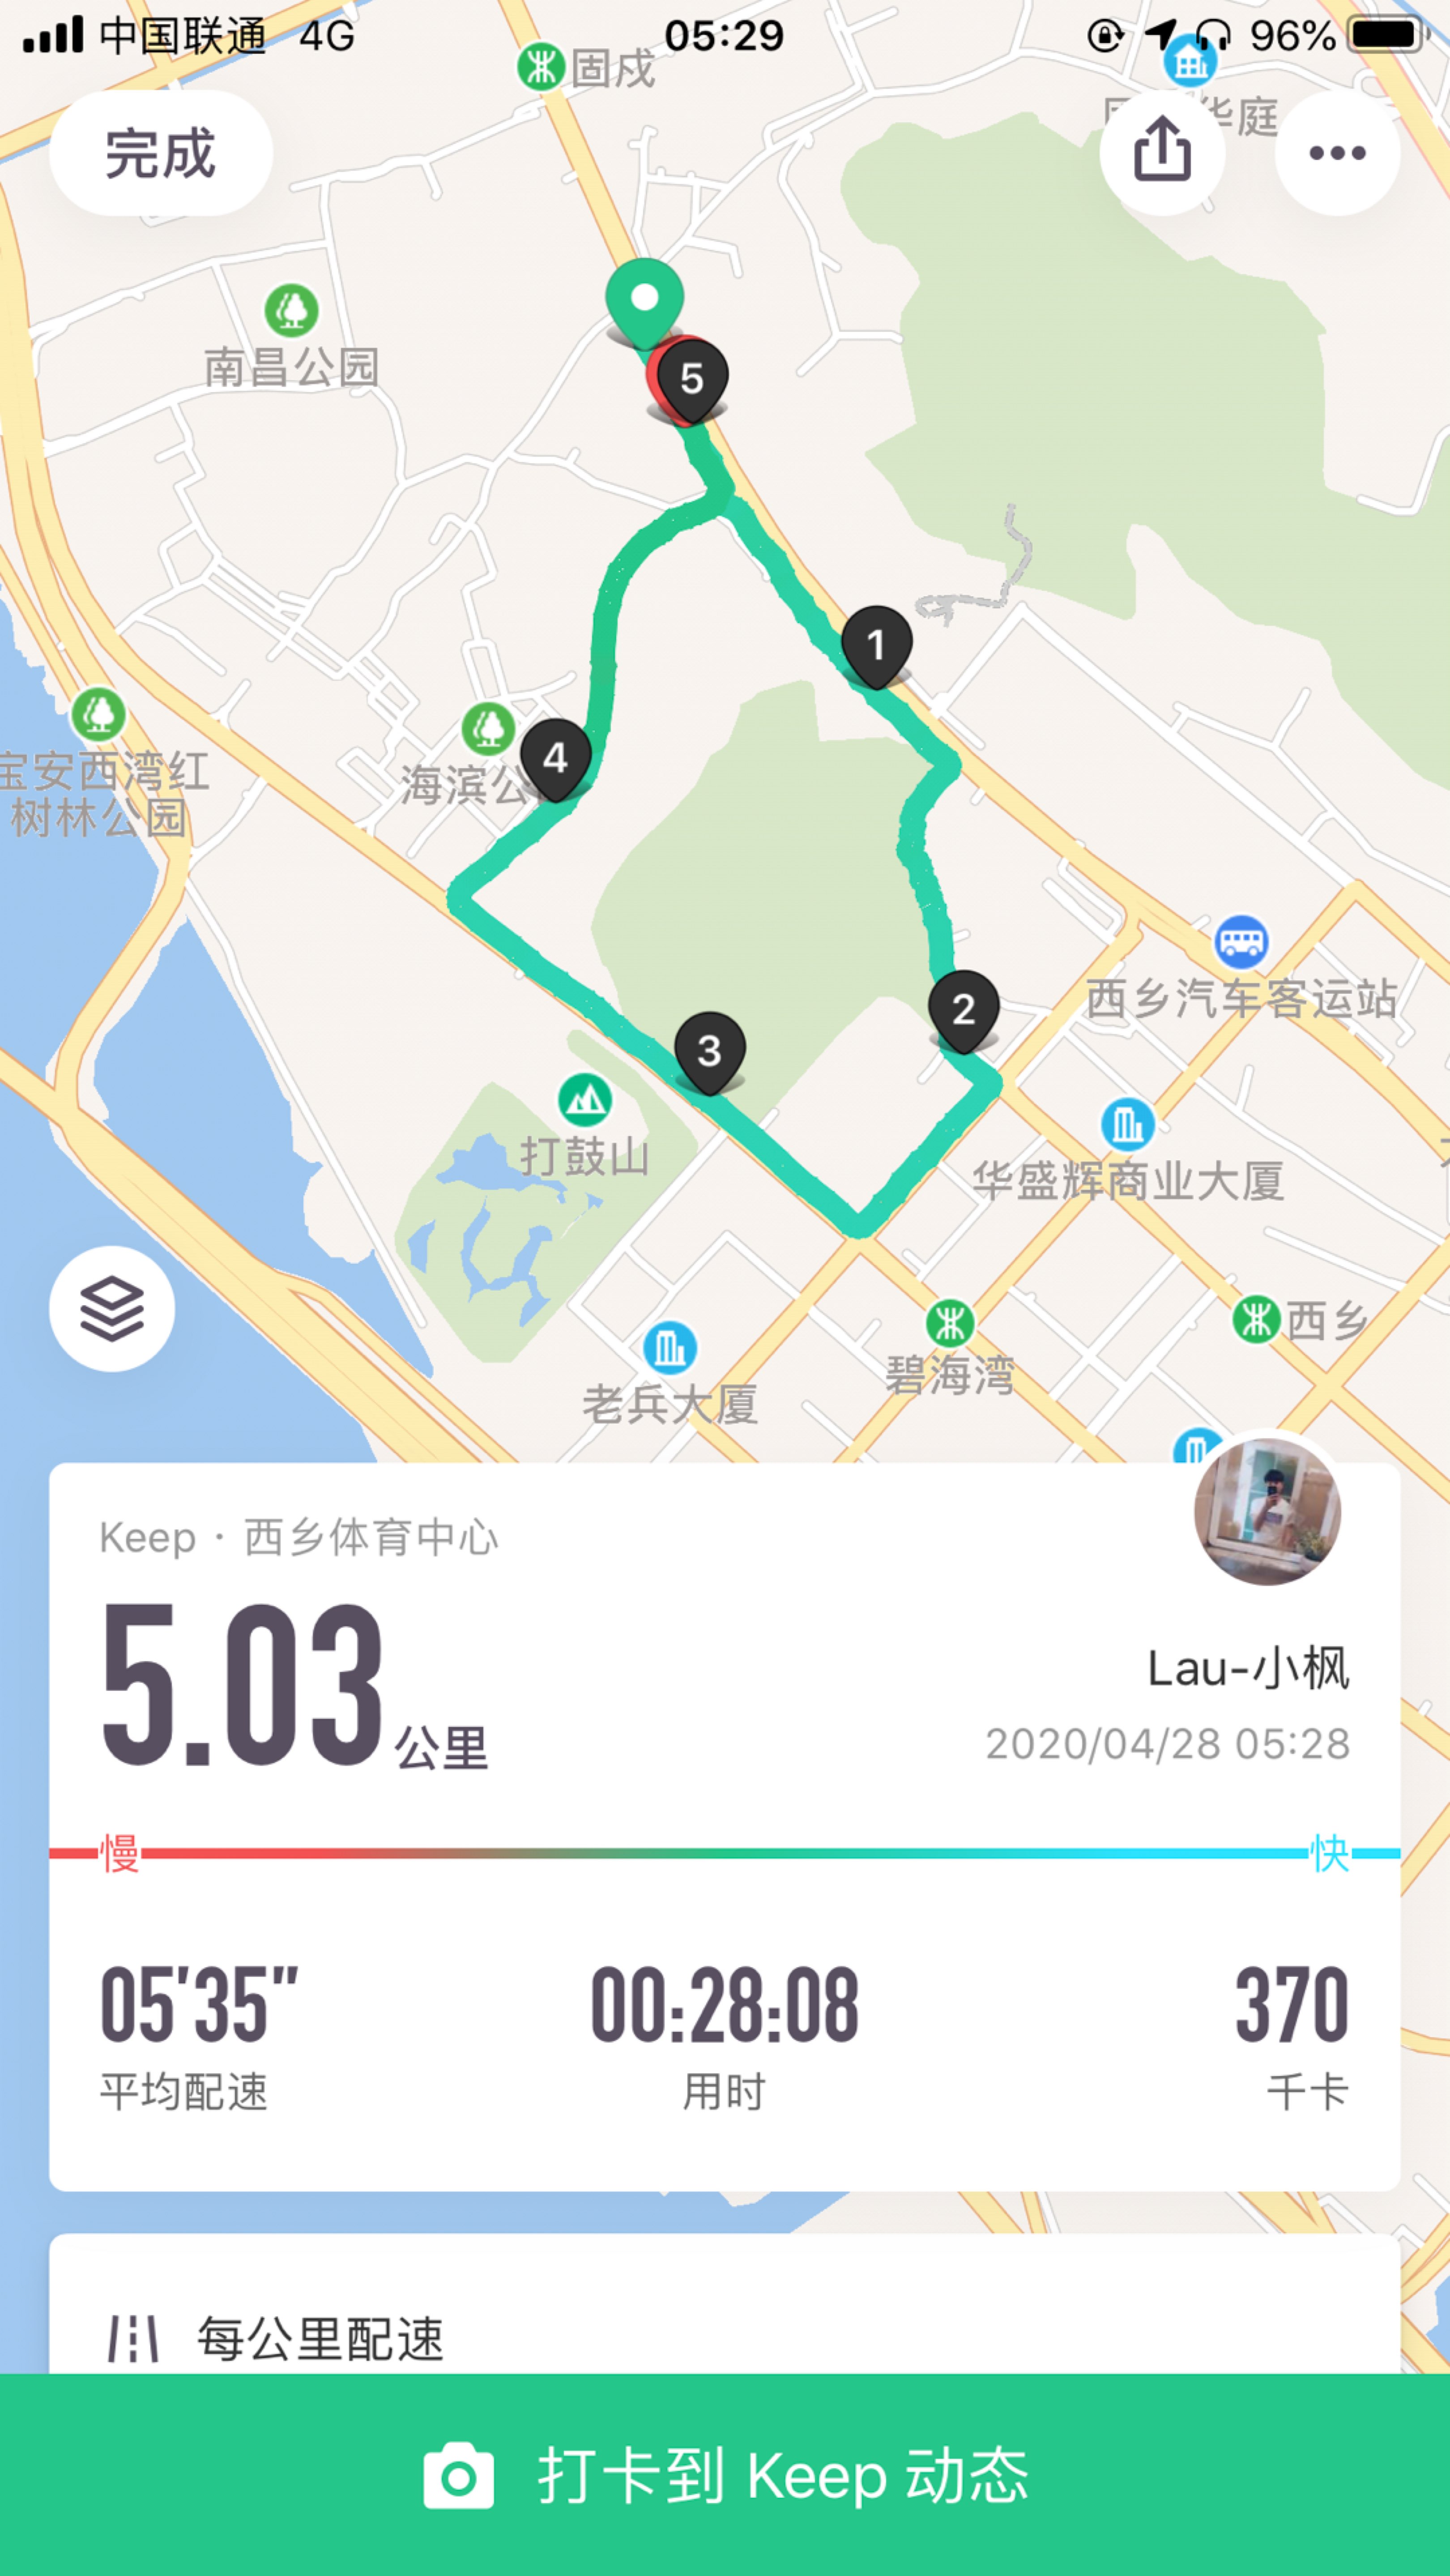 今日晨跑打卡,5km